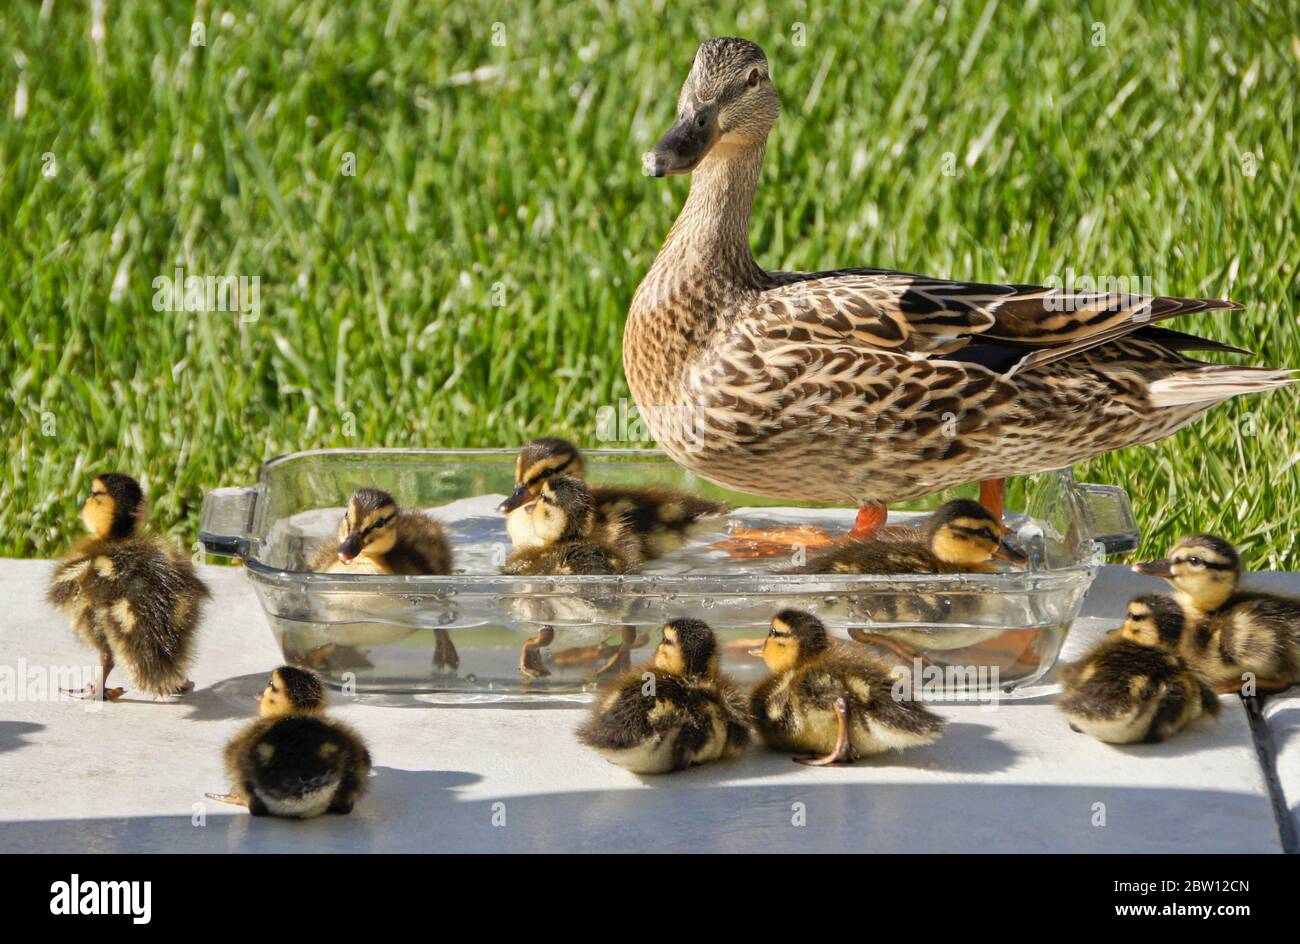 Hembra (gallina) pato de pato y patos de pato que beben y descansan en un tazón de agua fresca en el patio trasero de la casa del sur de California Foto de stock